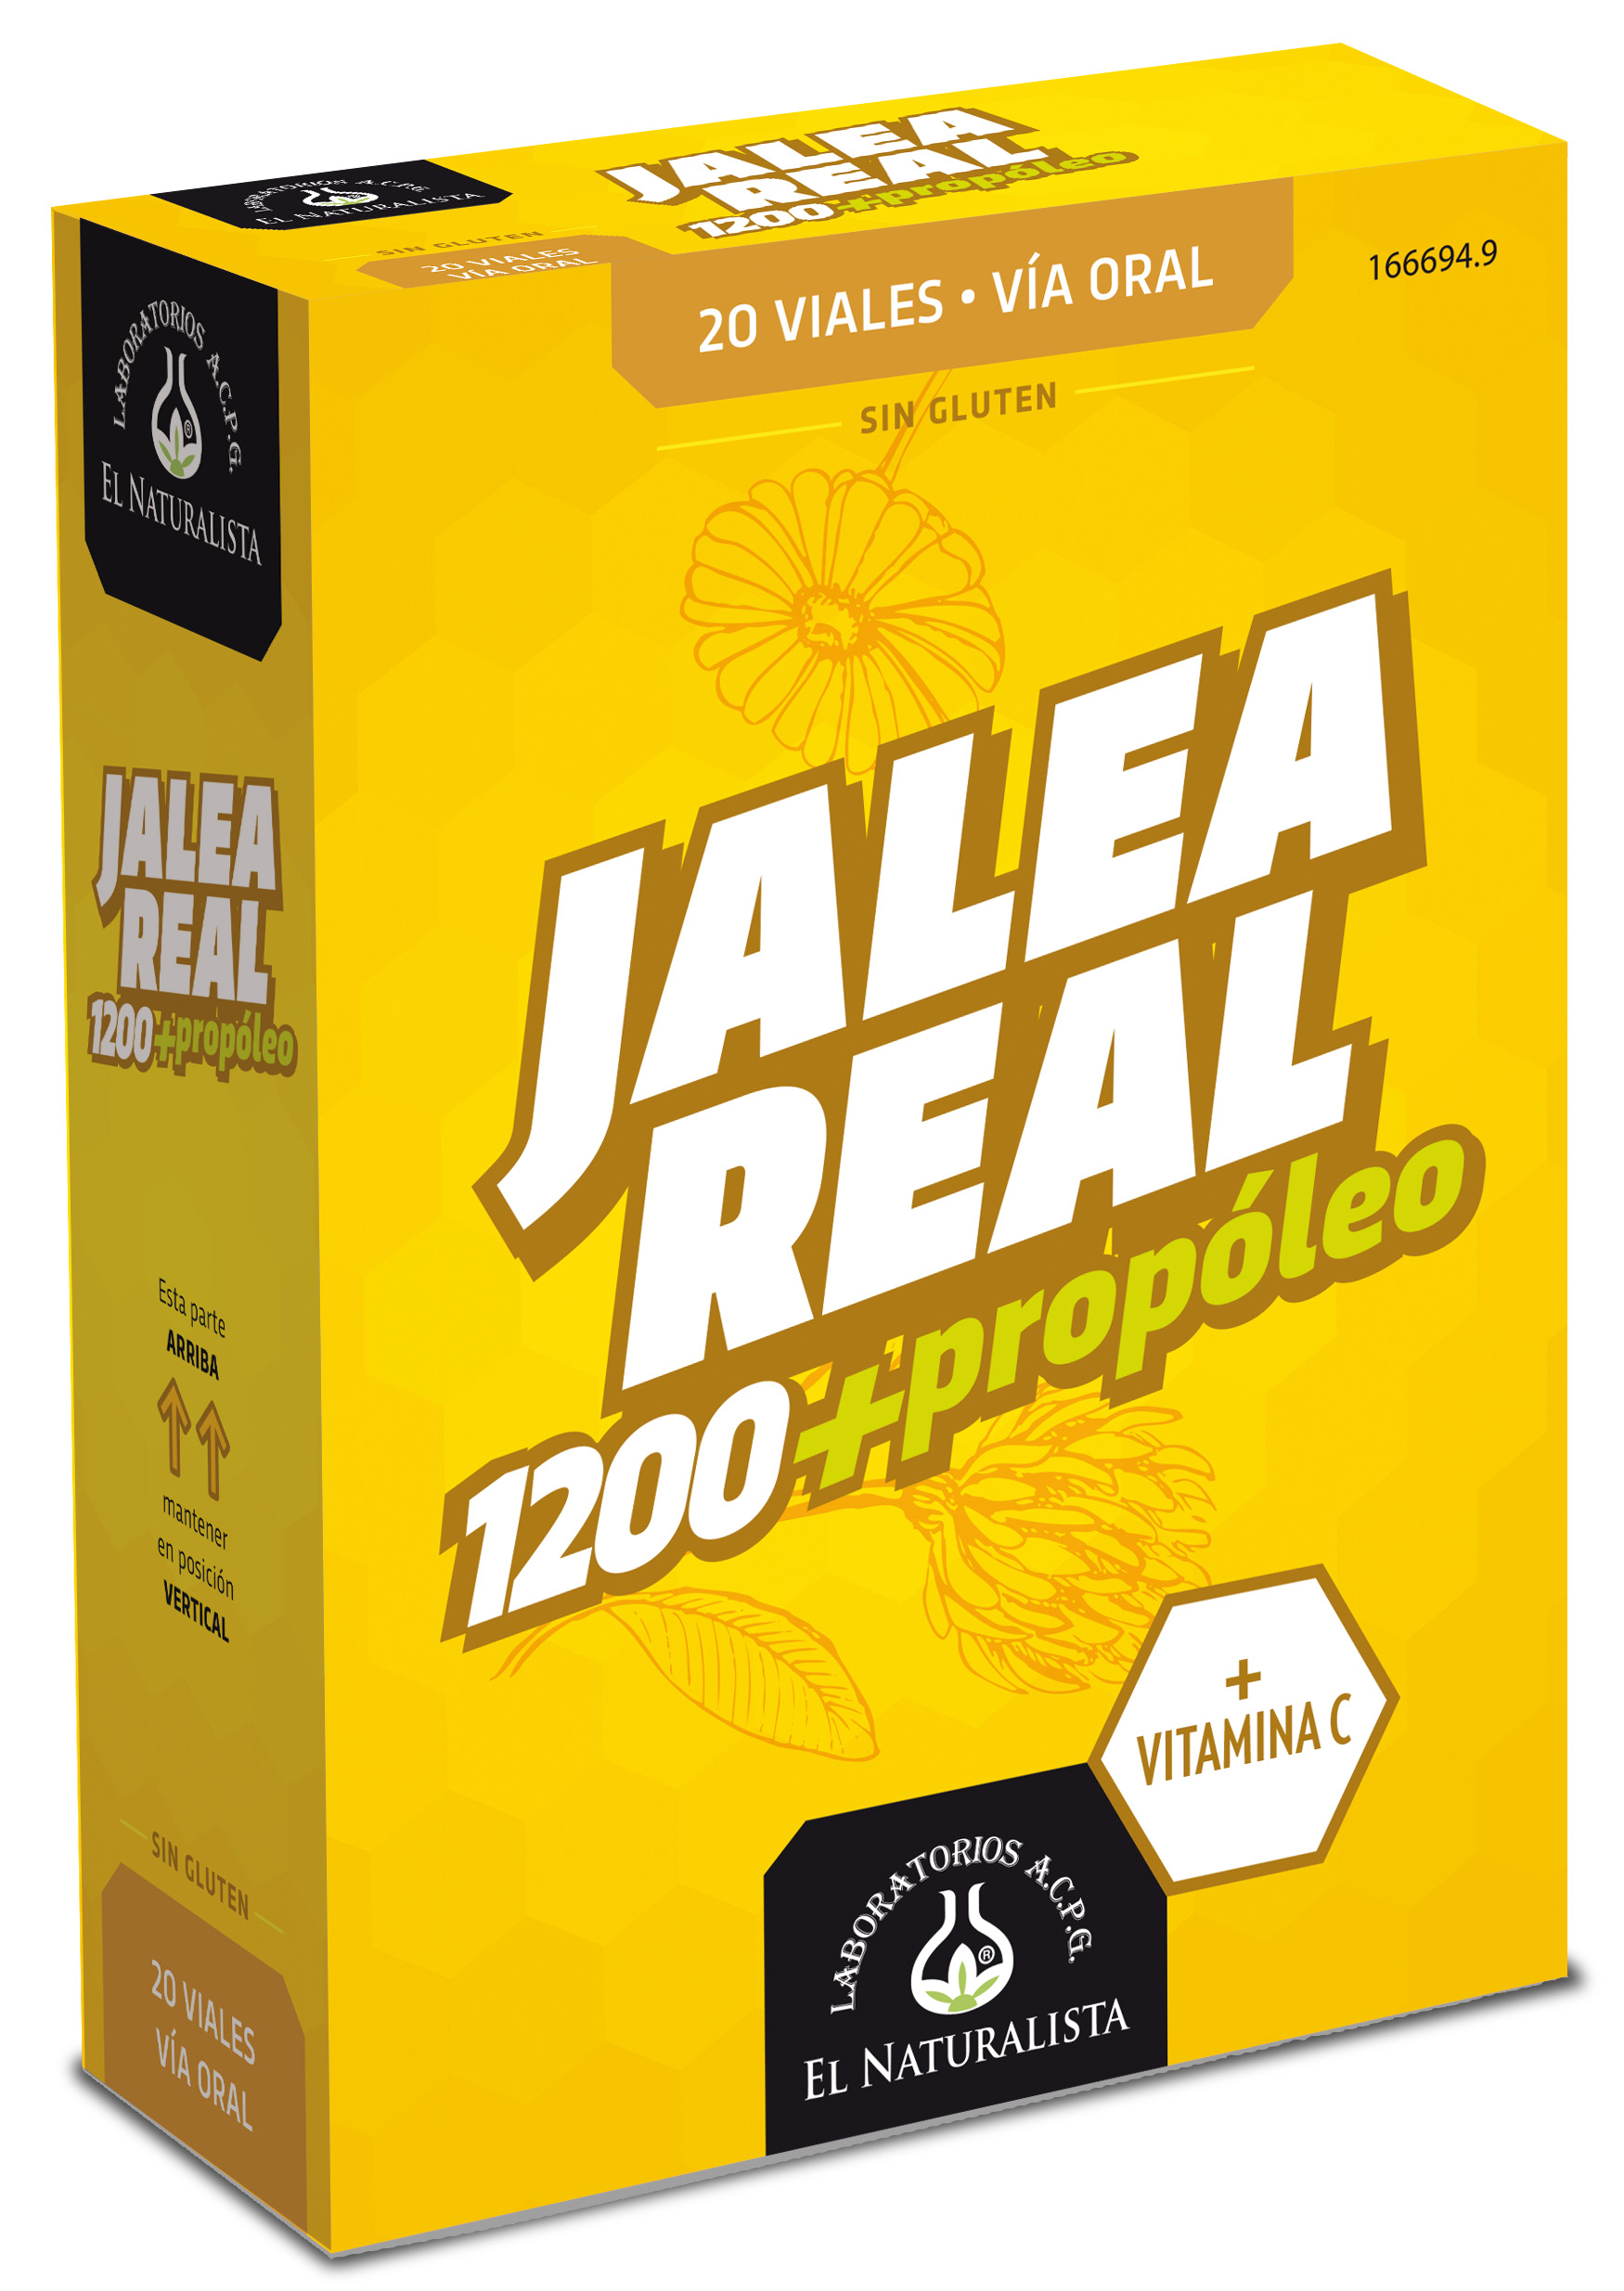 Jalea Real con Propoleo 20 viales